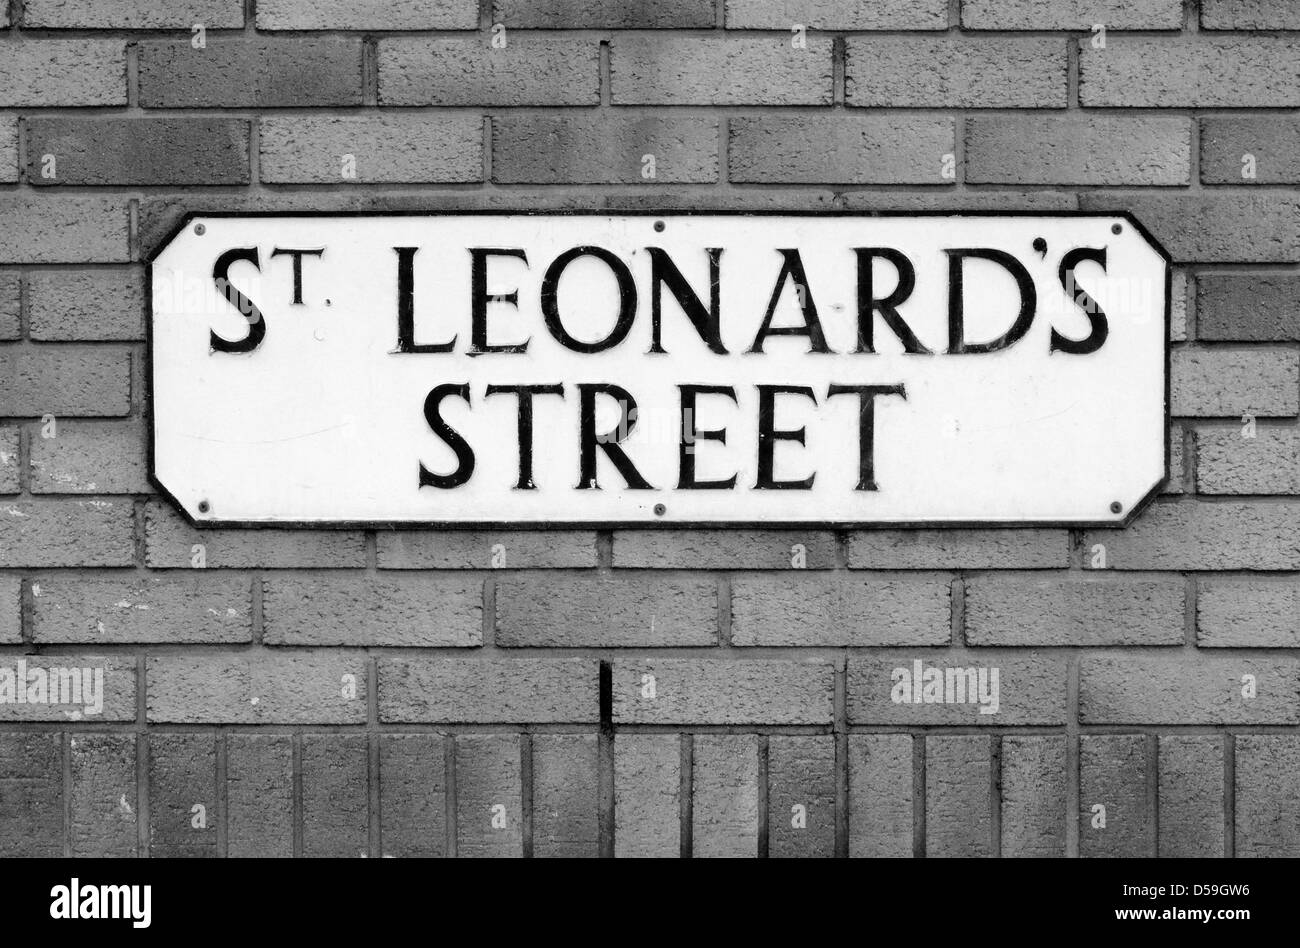 Sign for St Leonard's Street, Edinburgh Stock Photo